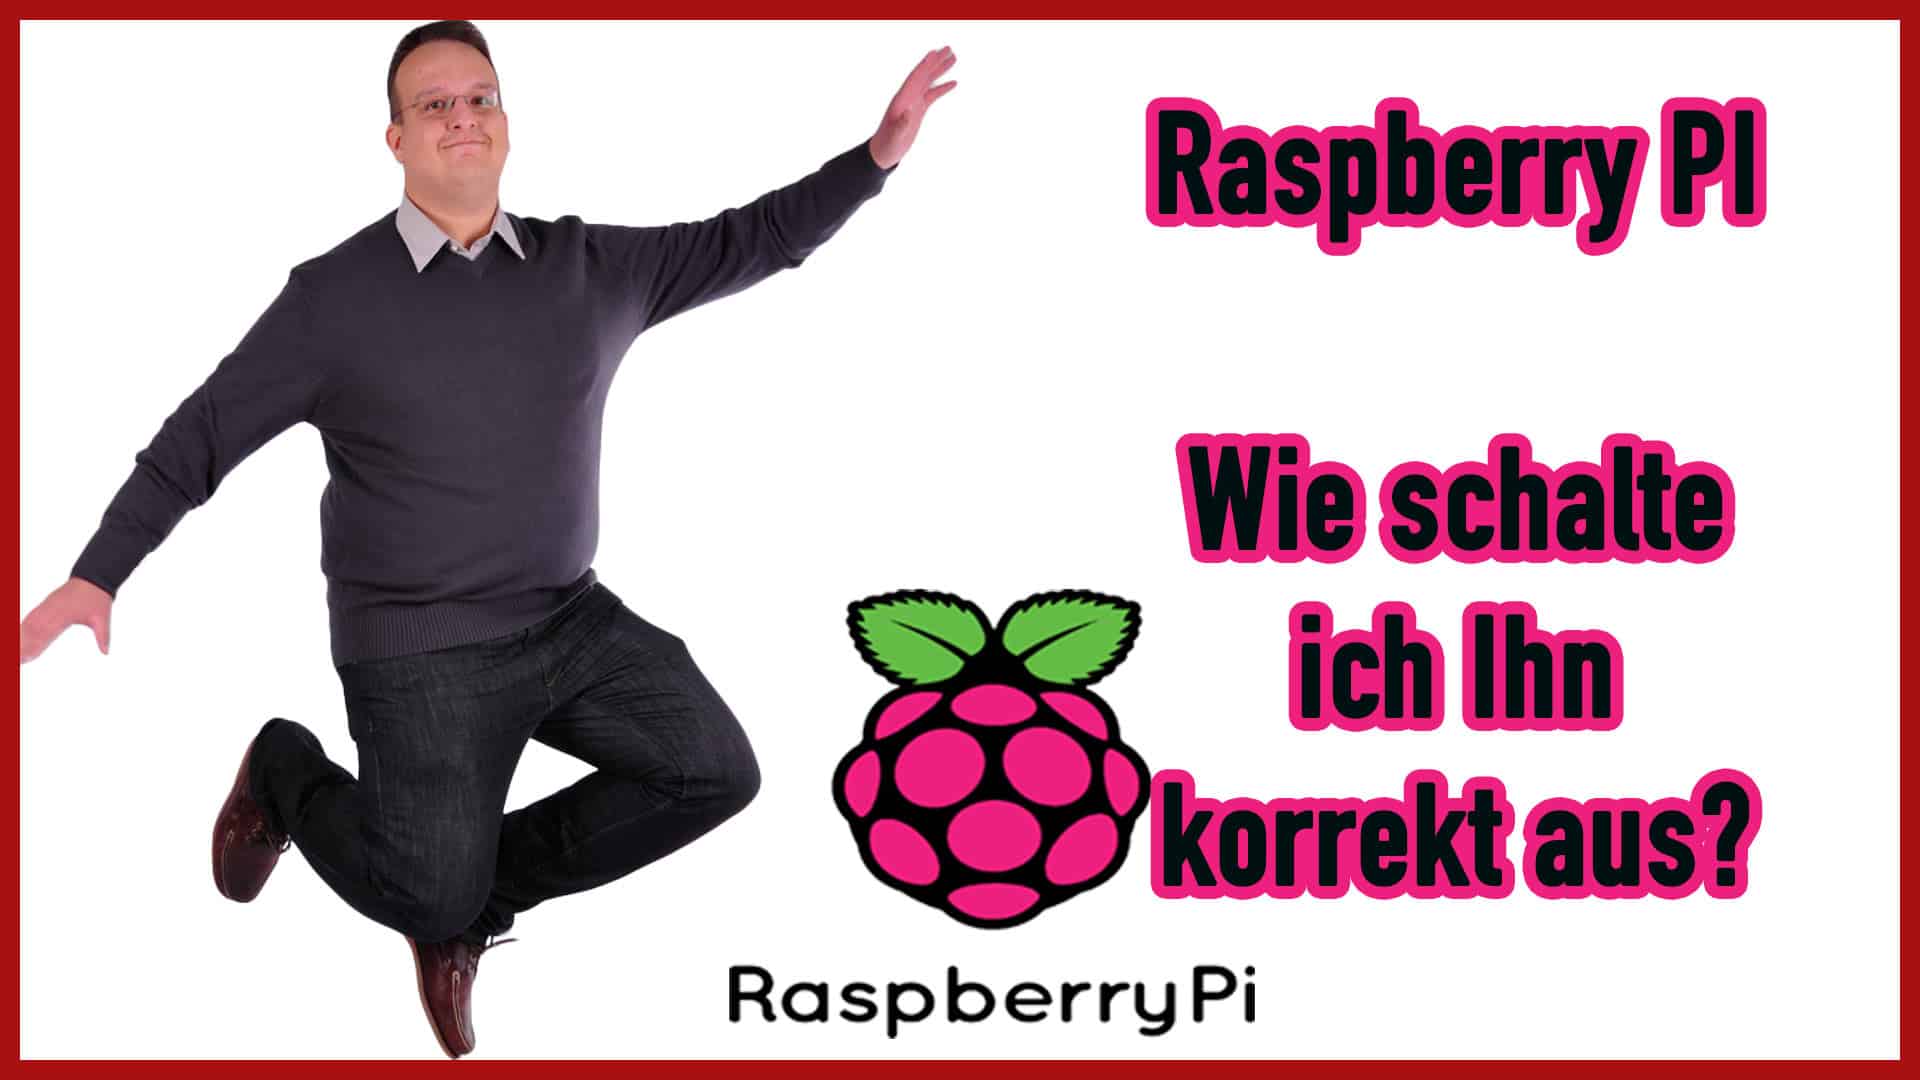 Raspberry Pi: Wie schalte ich ihn korrekt aus?